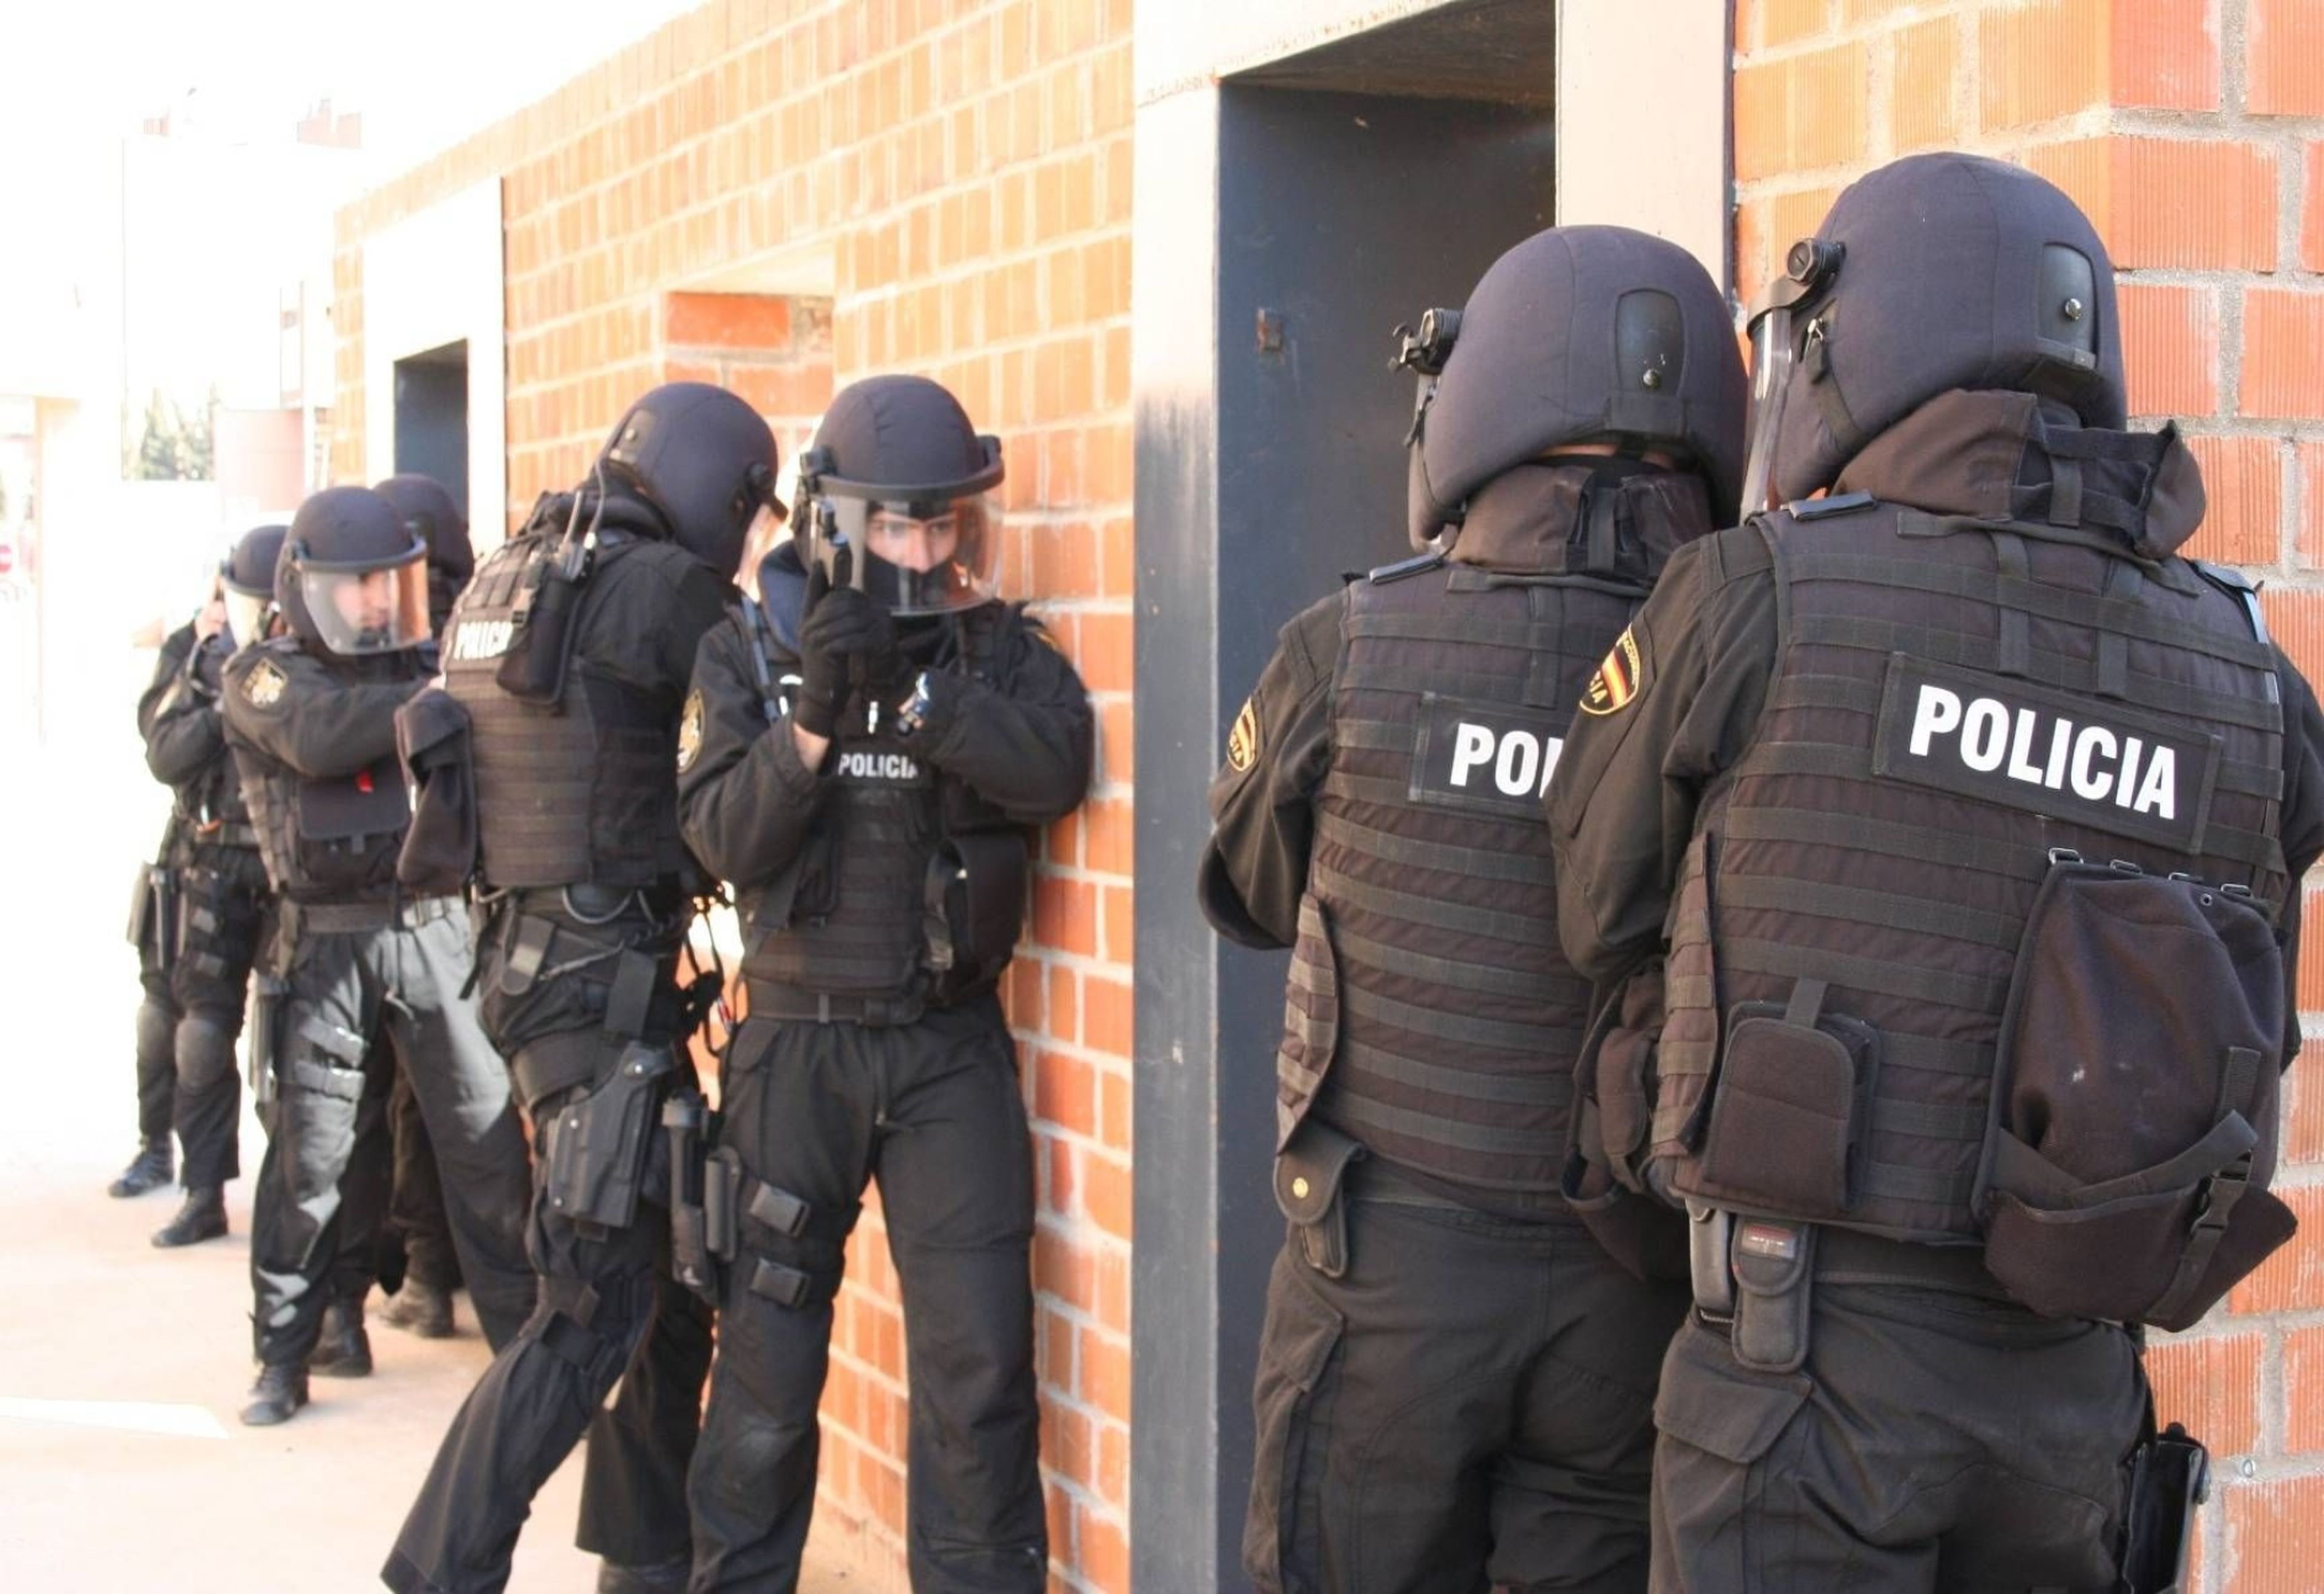 Cuánto cobra GEO de la Policía Este es su sueldo y condiciones | Business Insider España